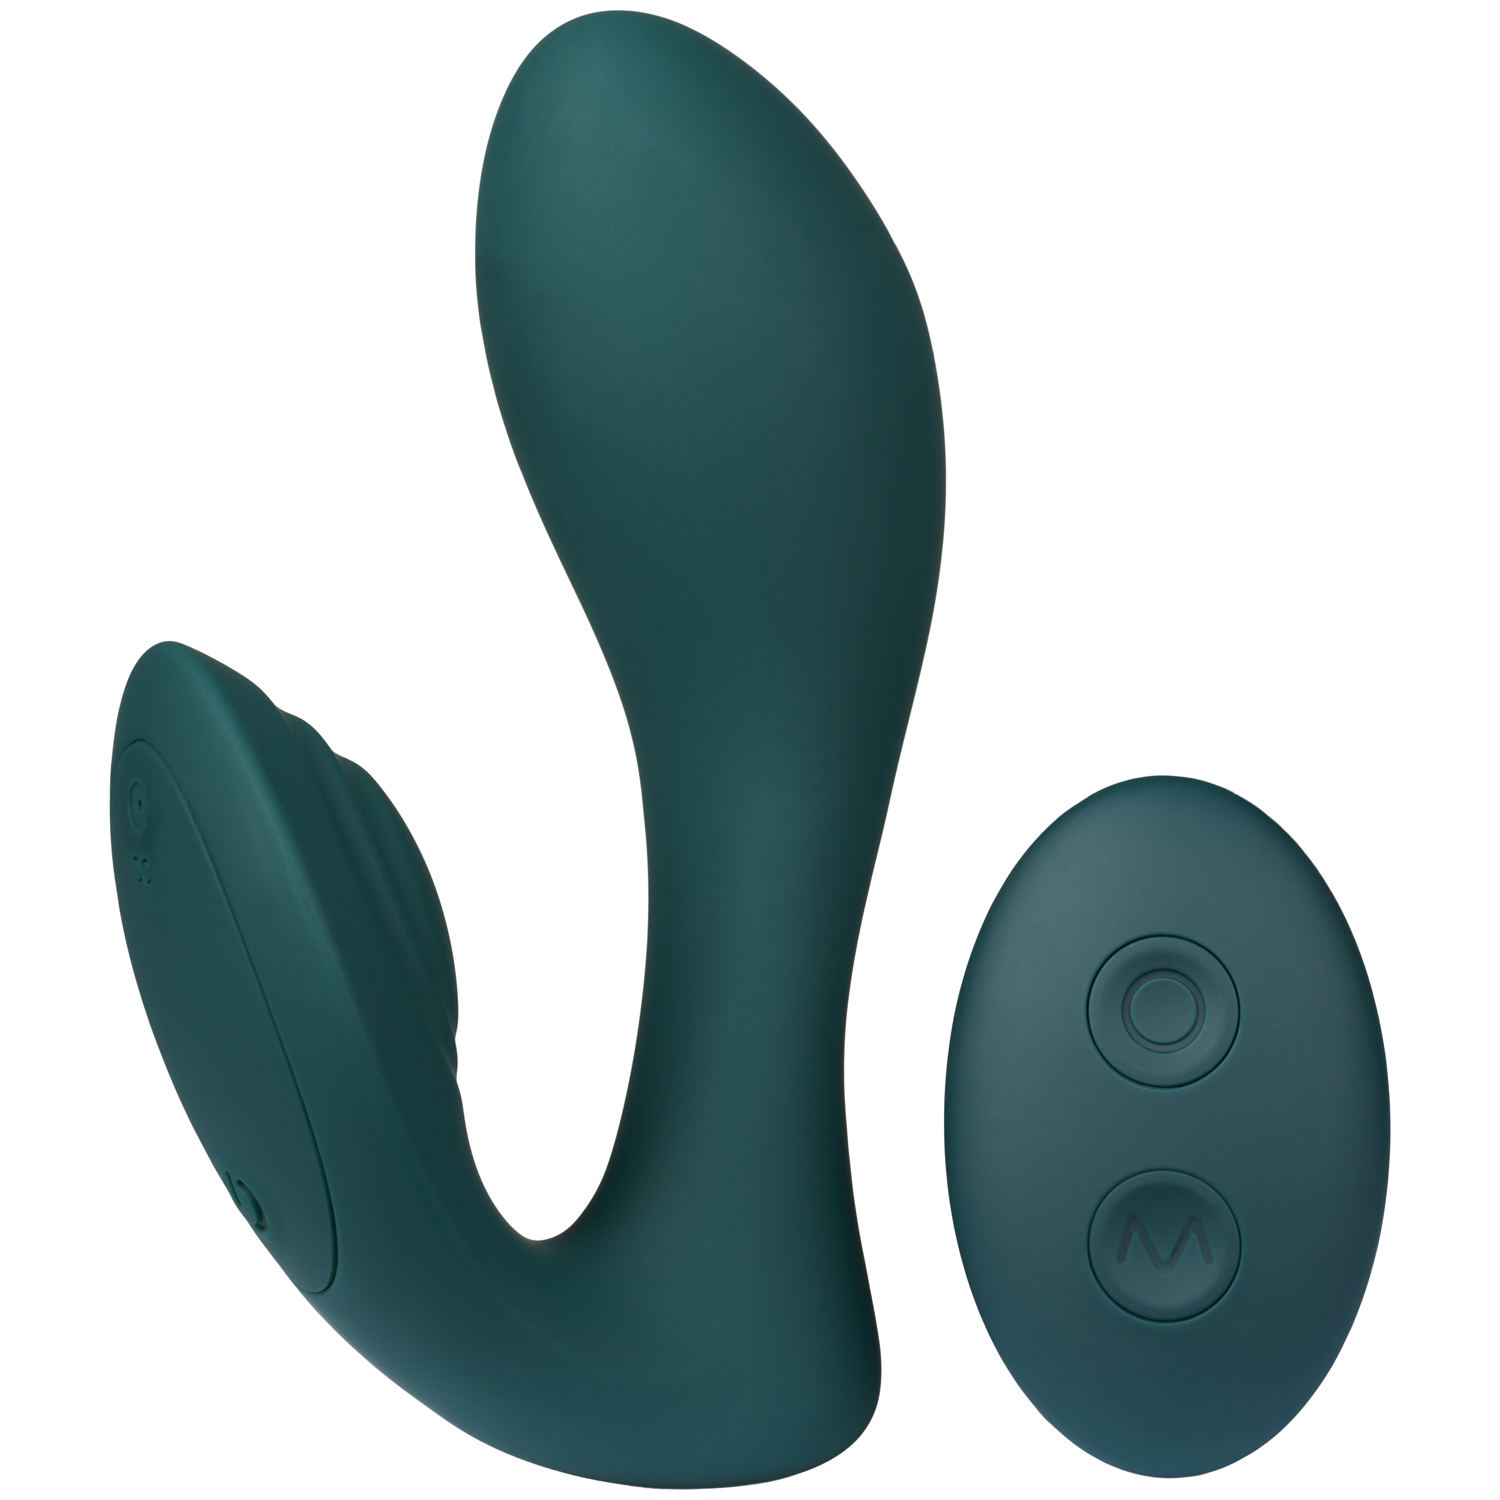 Amaysin G-punkts og Klitoris Vibrator med Fjernbetjening